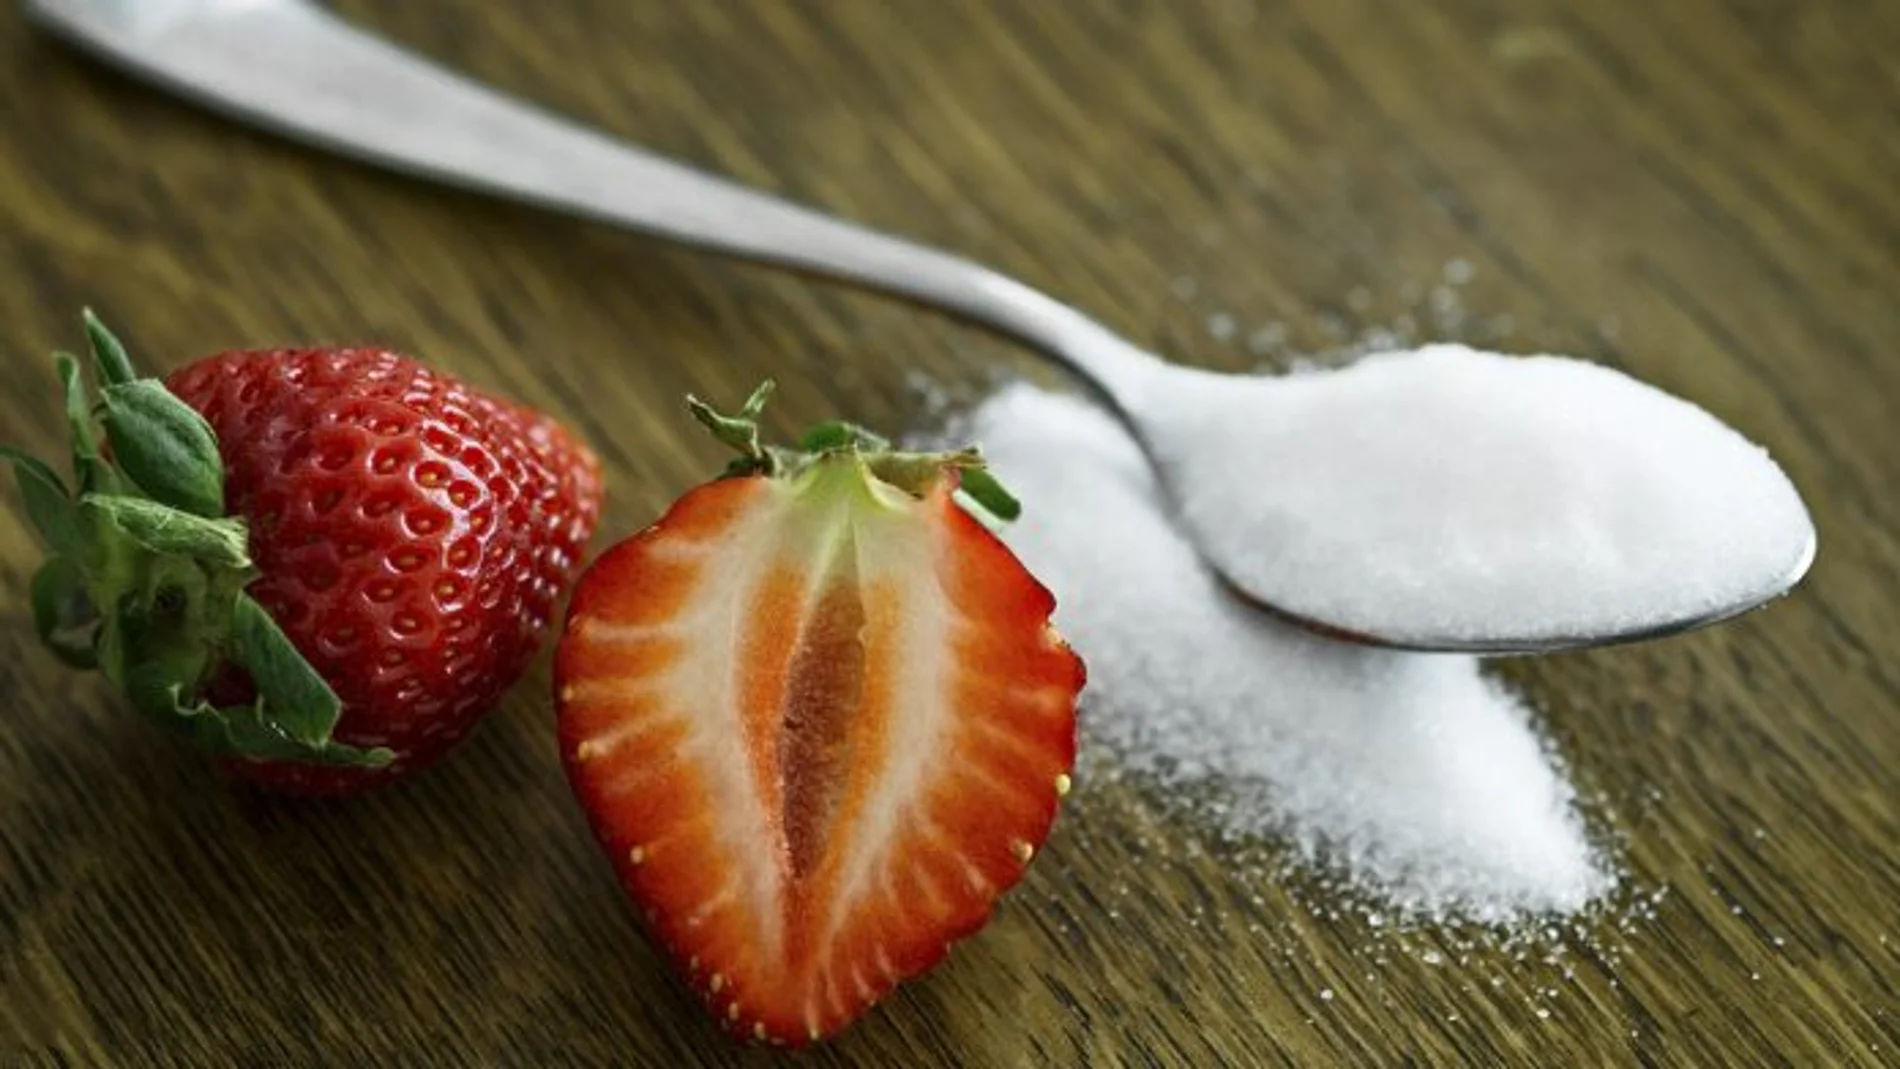 La estevia, también conocida como aditivo alimentario E-960, se muestra como una de las alternativas más saludables al azúcar, como la única opción “no artificial” en un sinfín de productos industriales, pero ¿es cierto el mensaje que se está transmitiendo al consumidor?